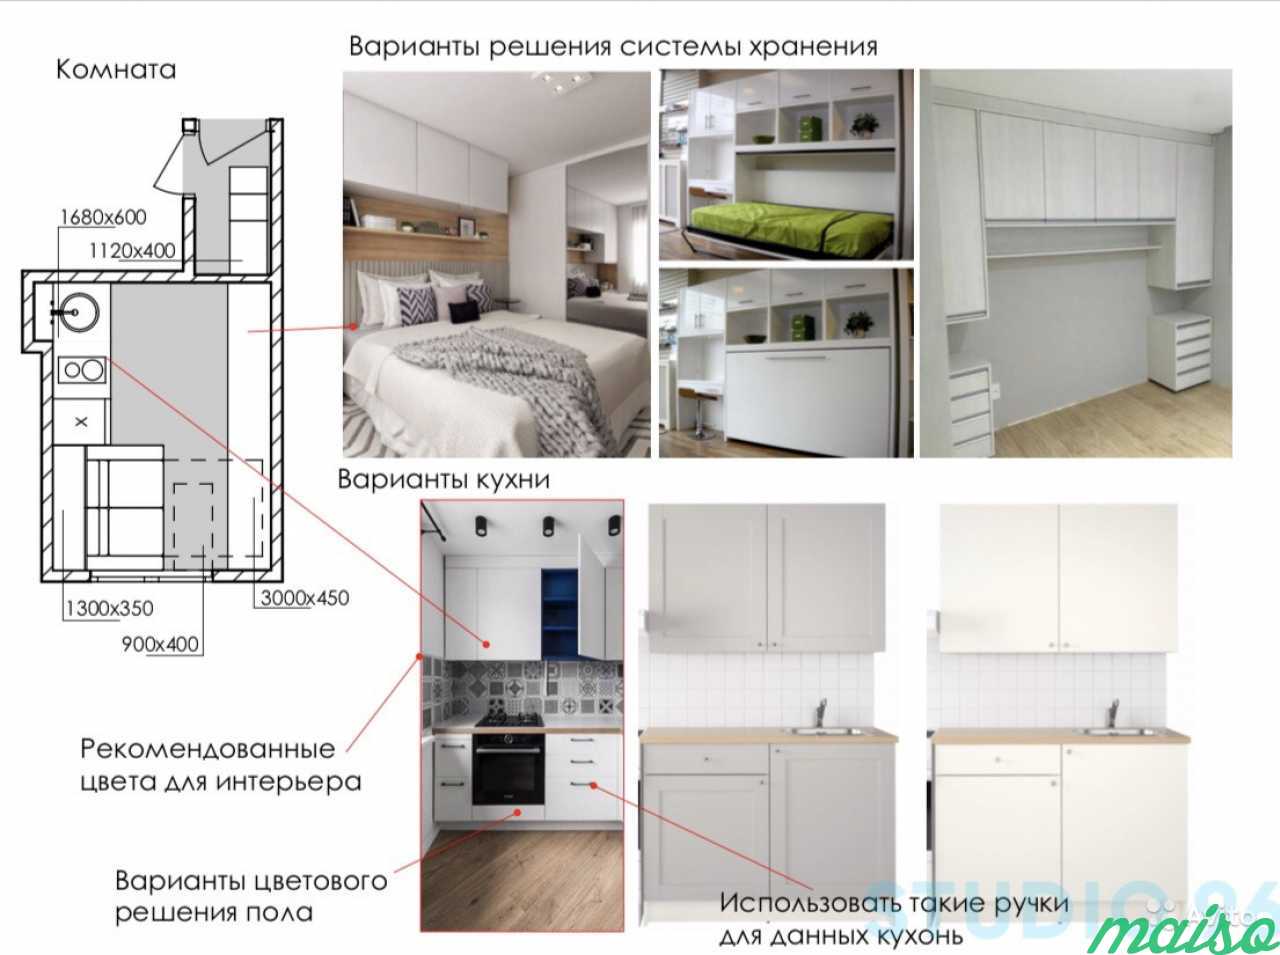 Экспресс дизайн проект любого помещения в Санкт-Петербурге. Фото 6